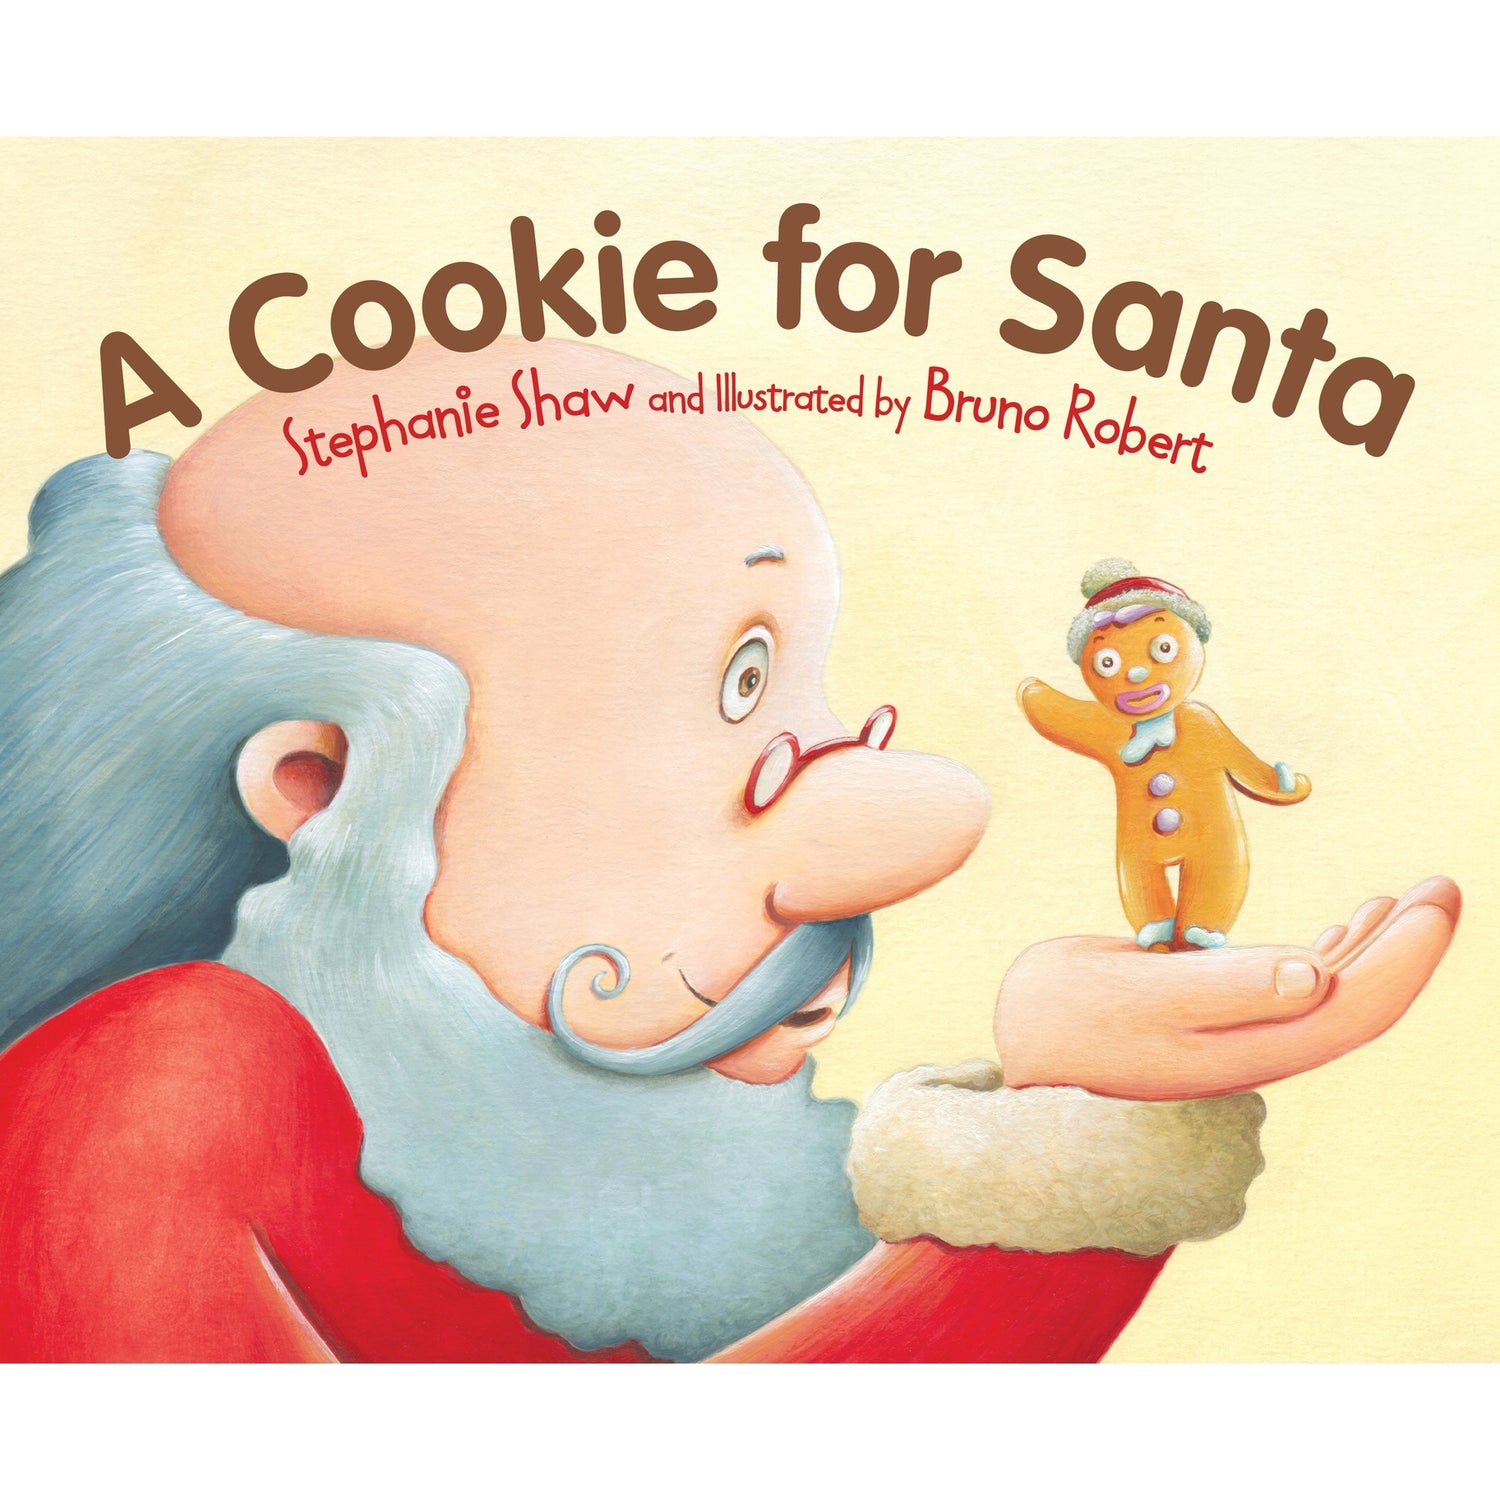 Santa, gingerbread man, cookies for Santa